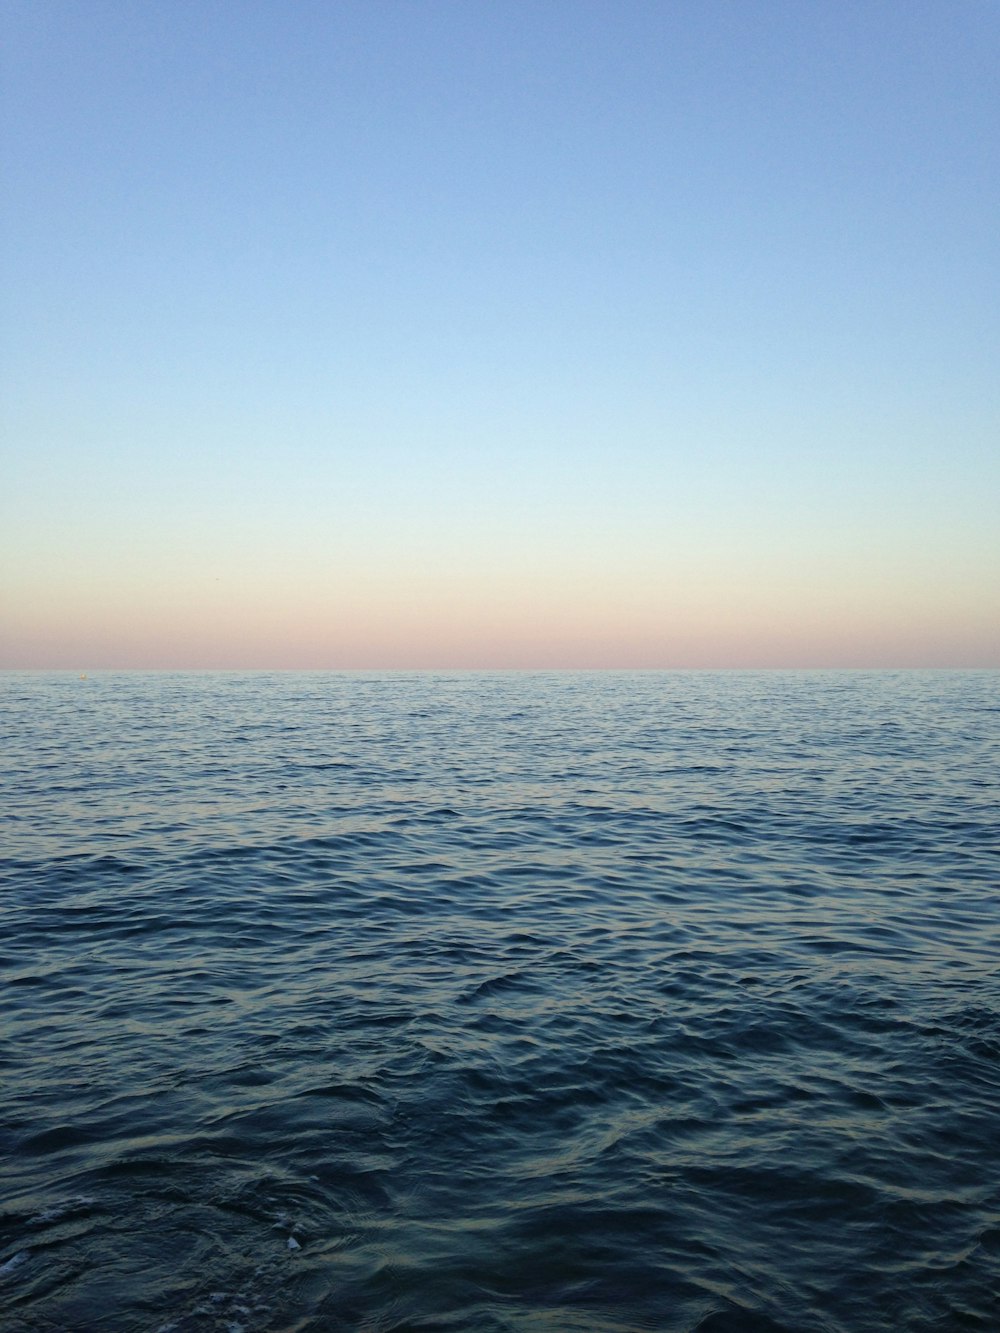 océan près du ciel bleu pendant la journée